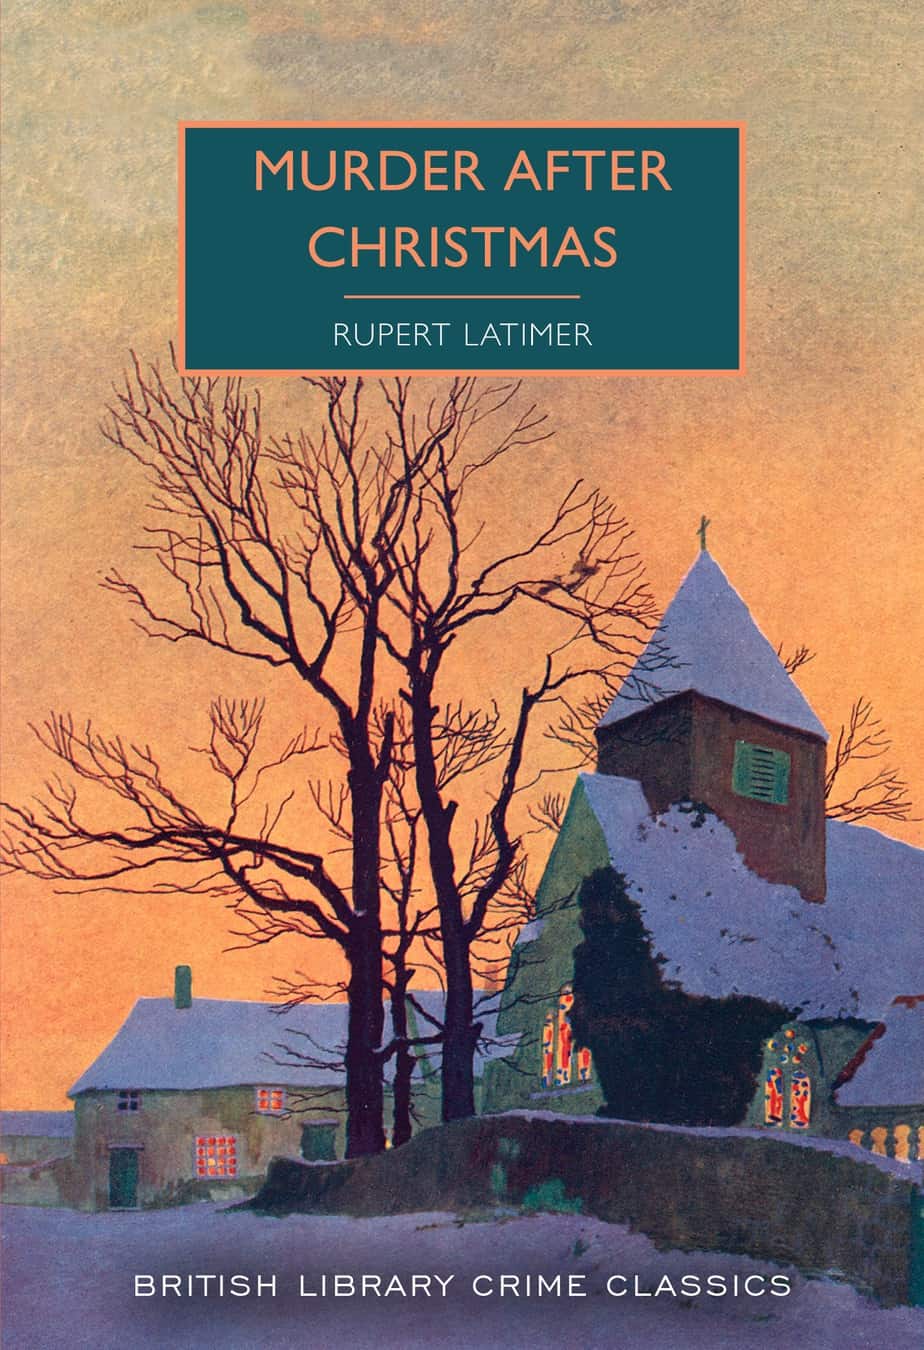 Murder After Christmas by Rupert Latimer 1944 sunset